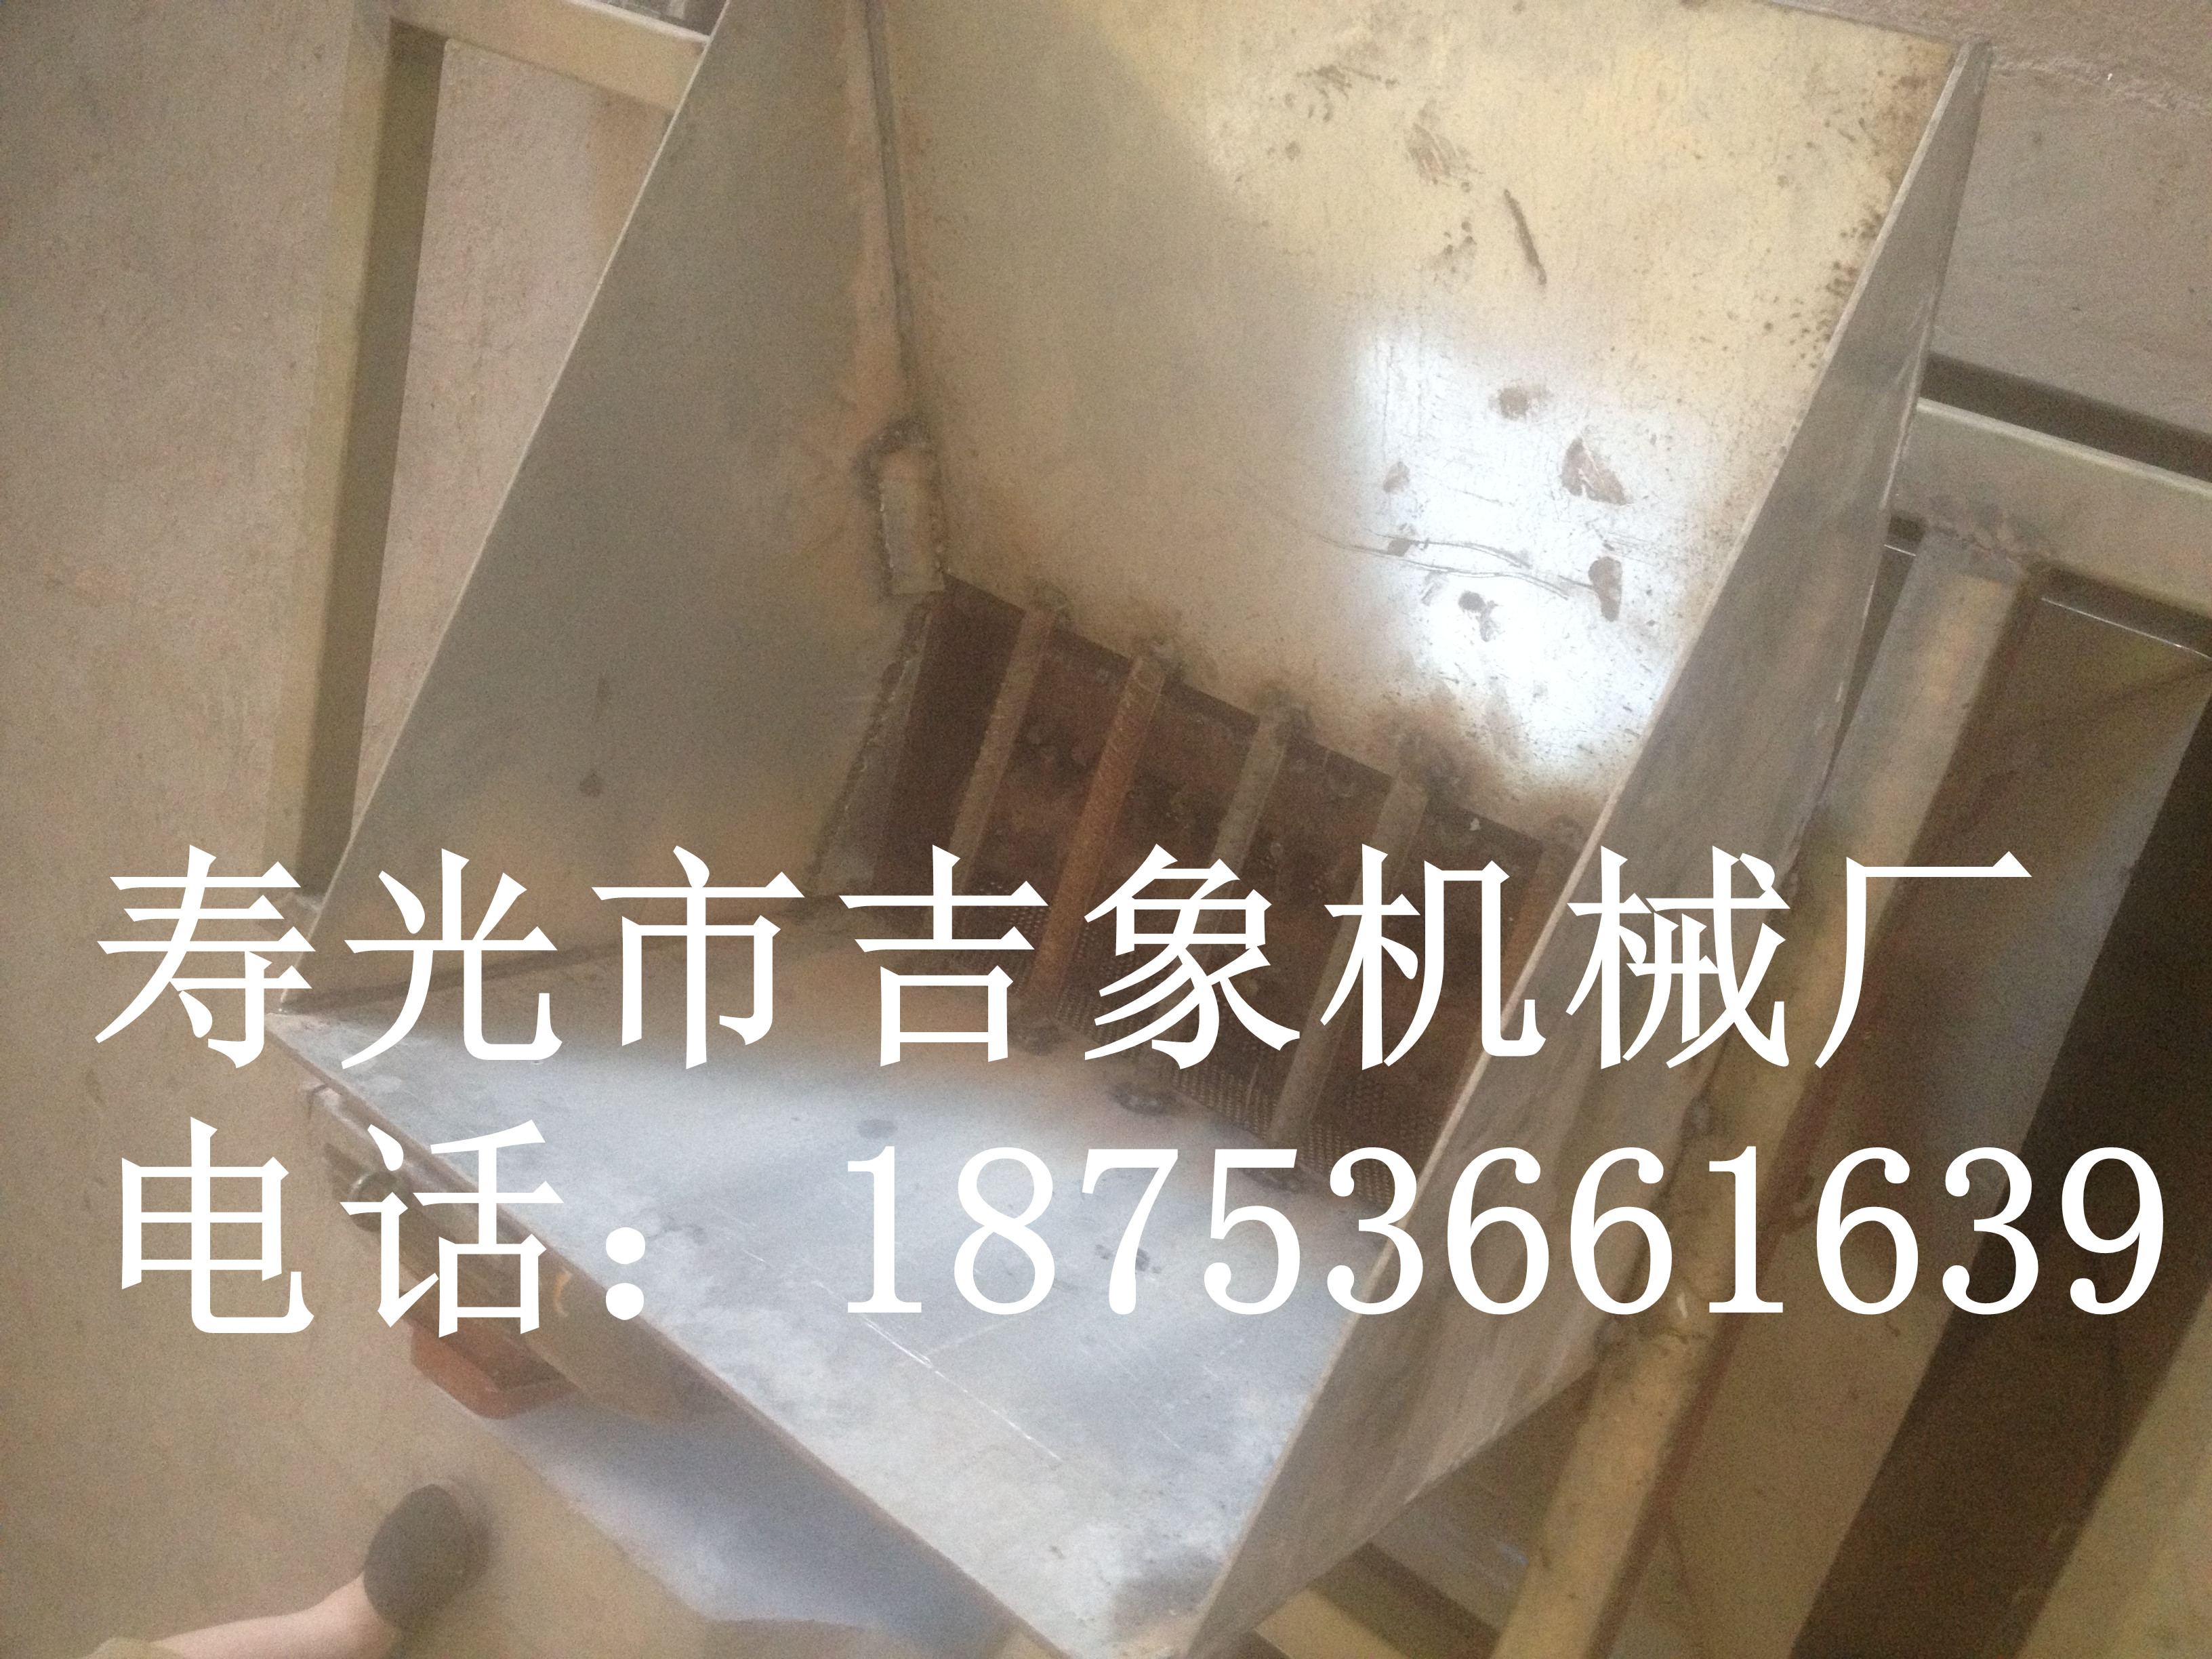 山东寿光厂家专业生产定做各种型号化肥破碎机